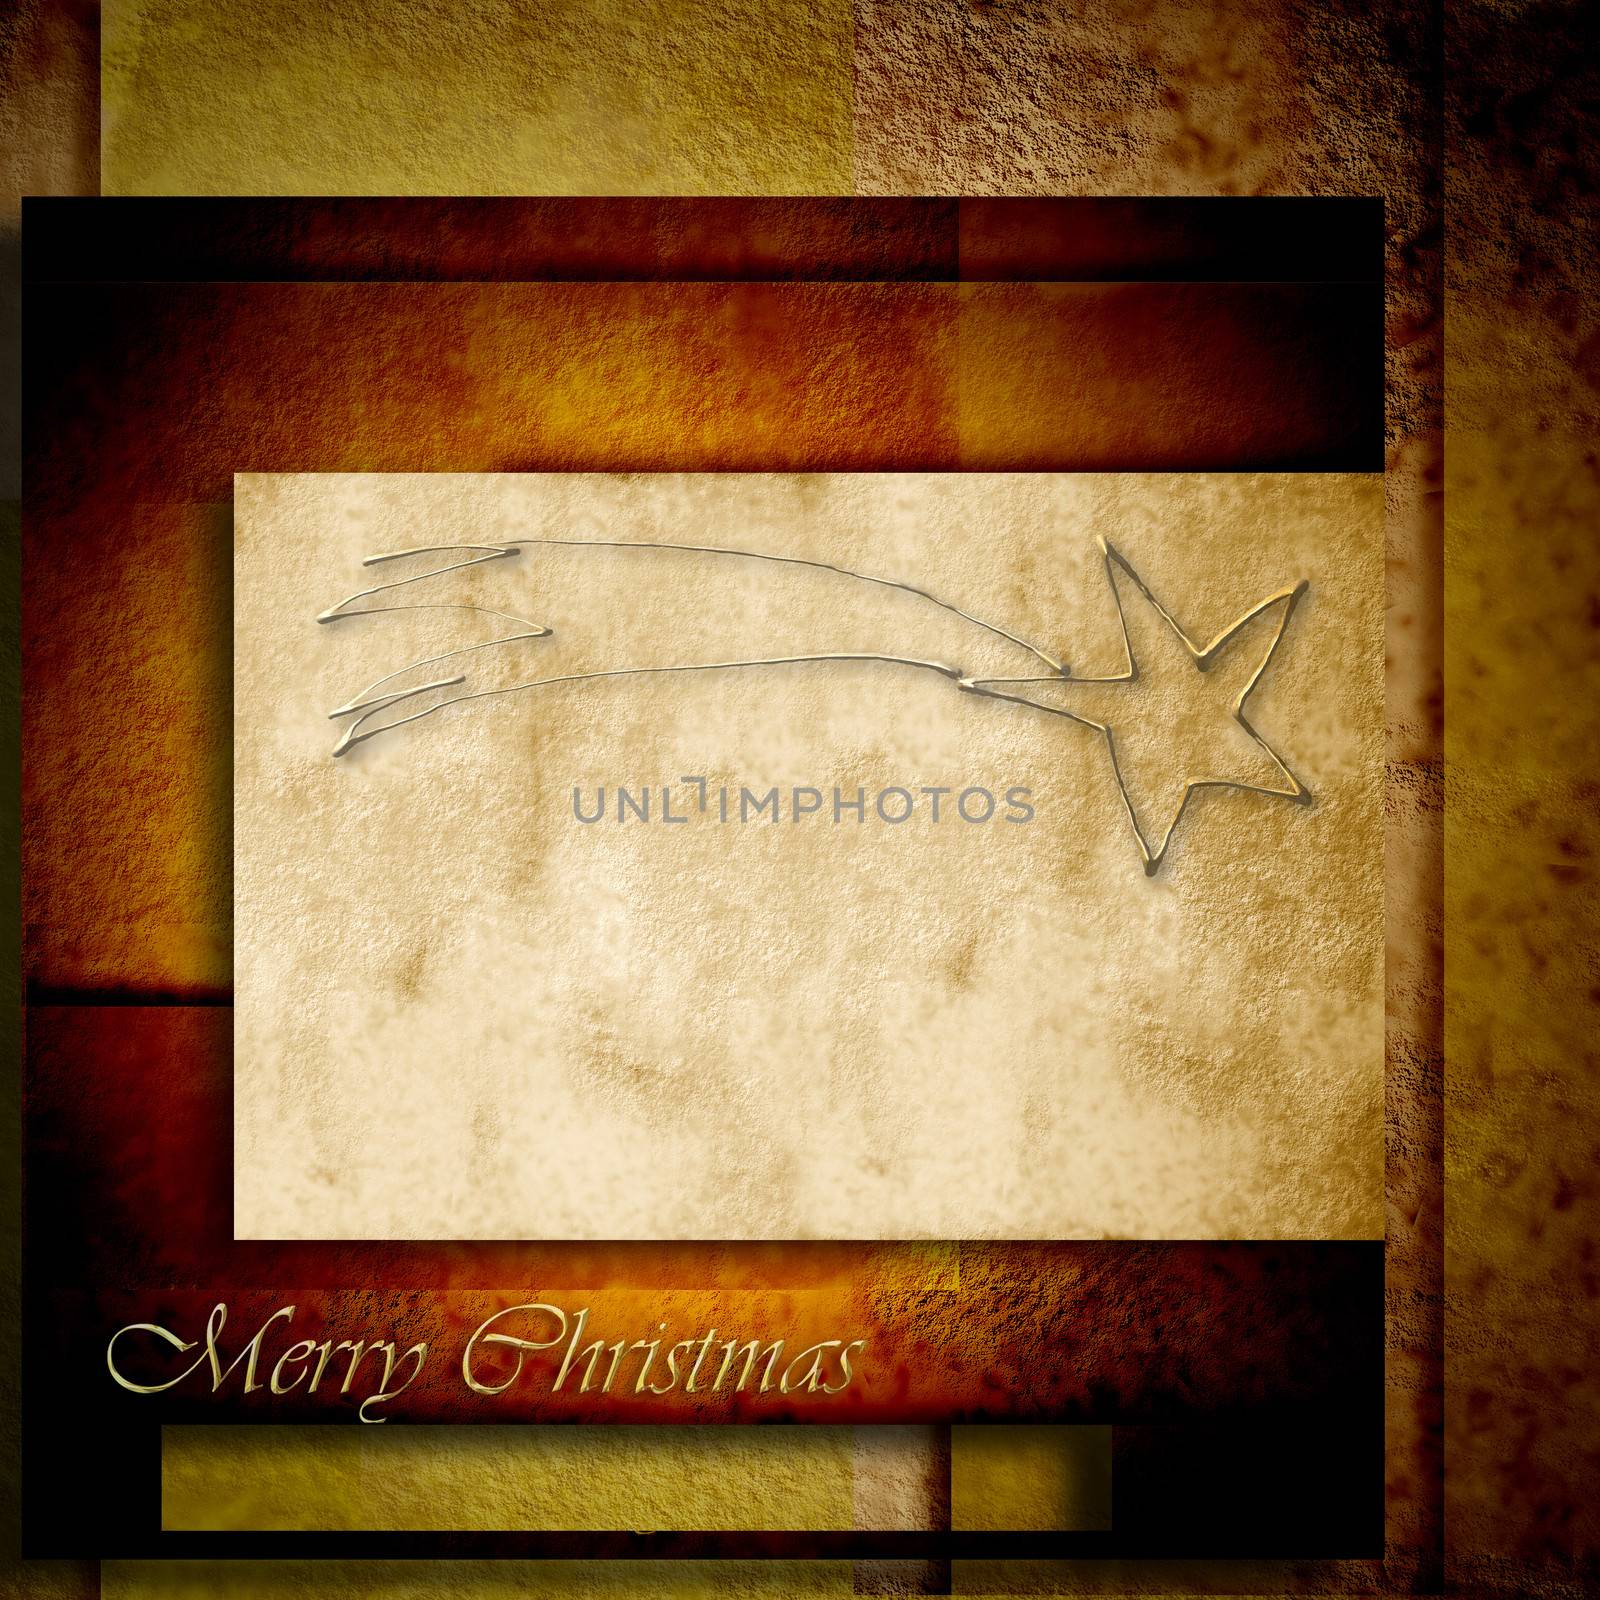 Christmas background, belen star in brown tones paper